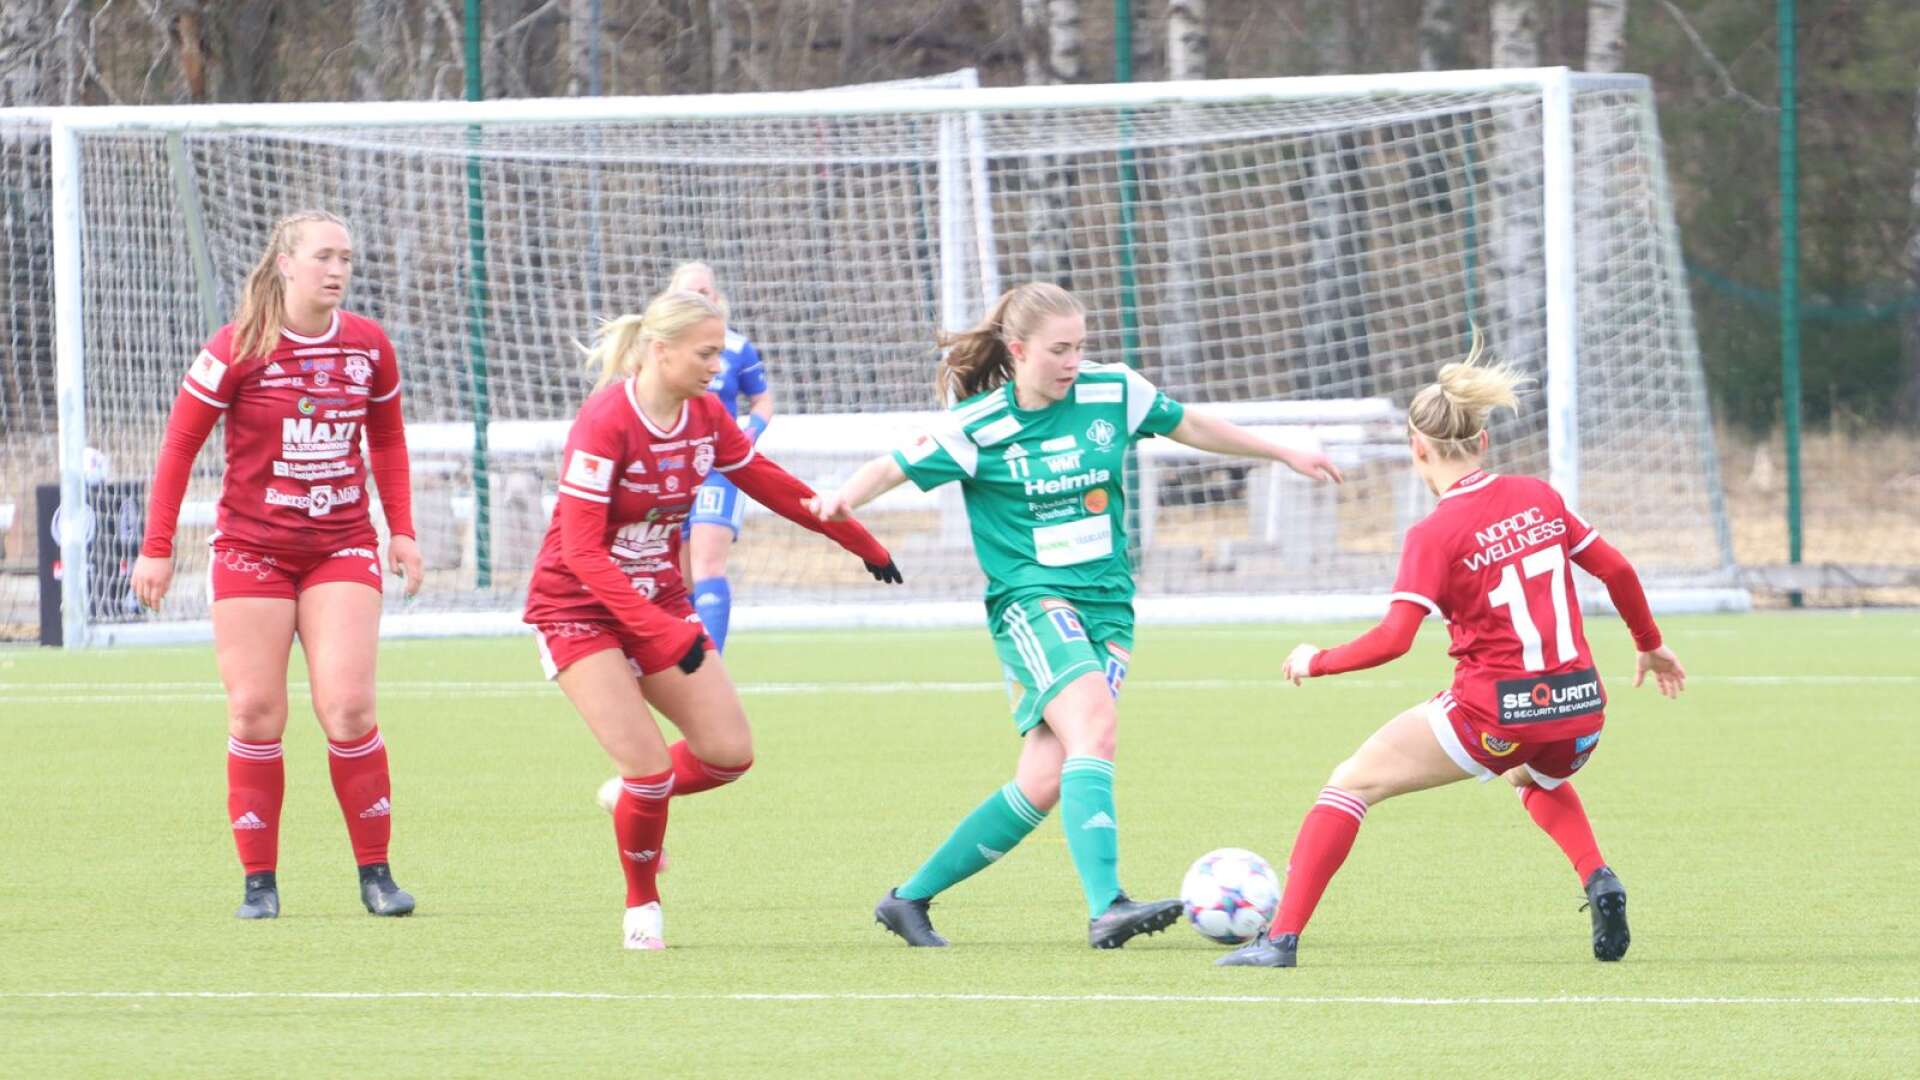 Mallbackens Viktoria Ström har direkt tagit en startplats trots både nytt lag och en högre division.